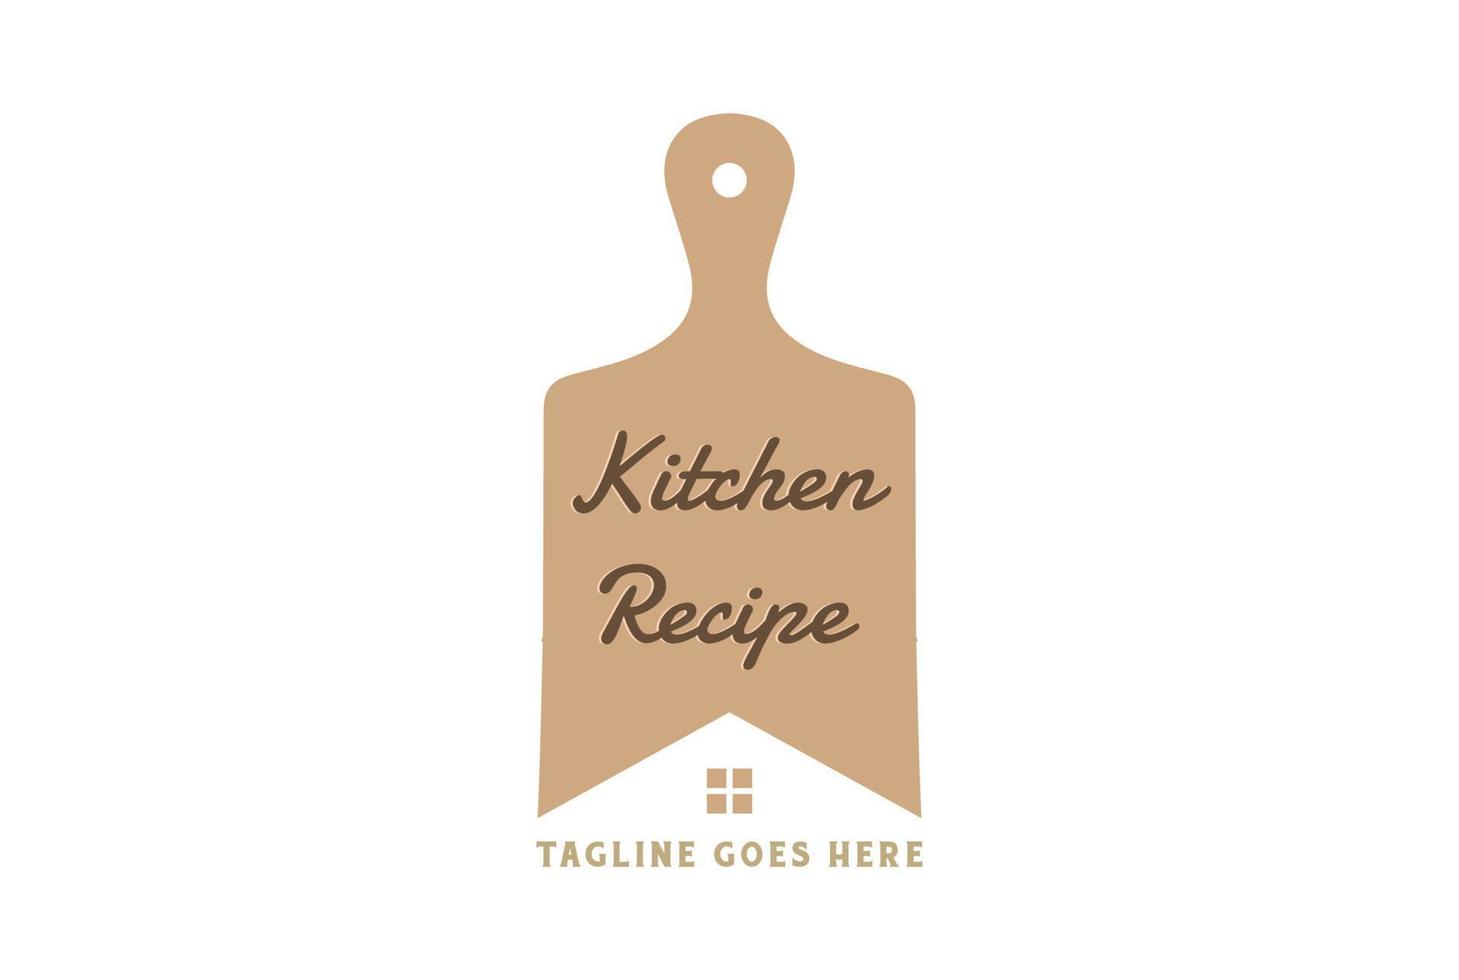 gemakkelijk minimalistische hout houten snijdend bord voor keuken recept restaurant catering voedsel koken logo ontwerp vector